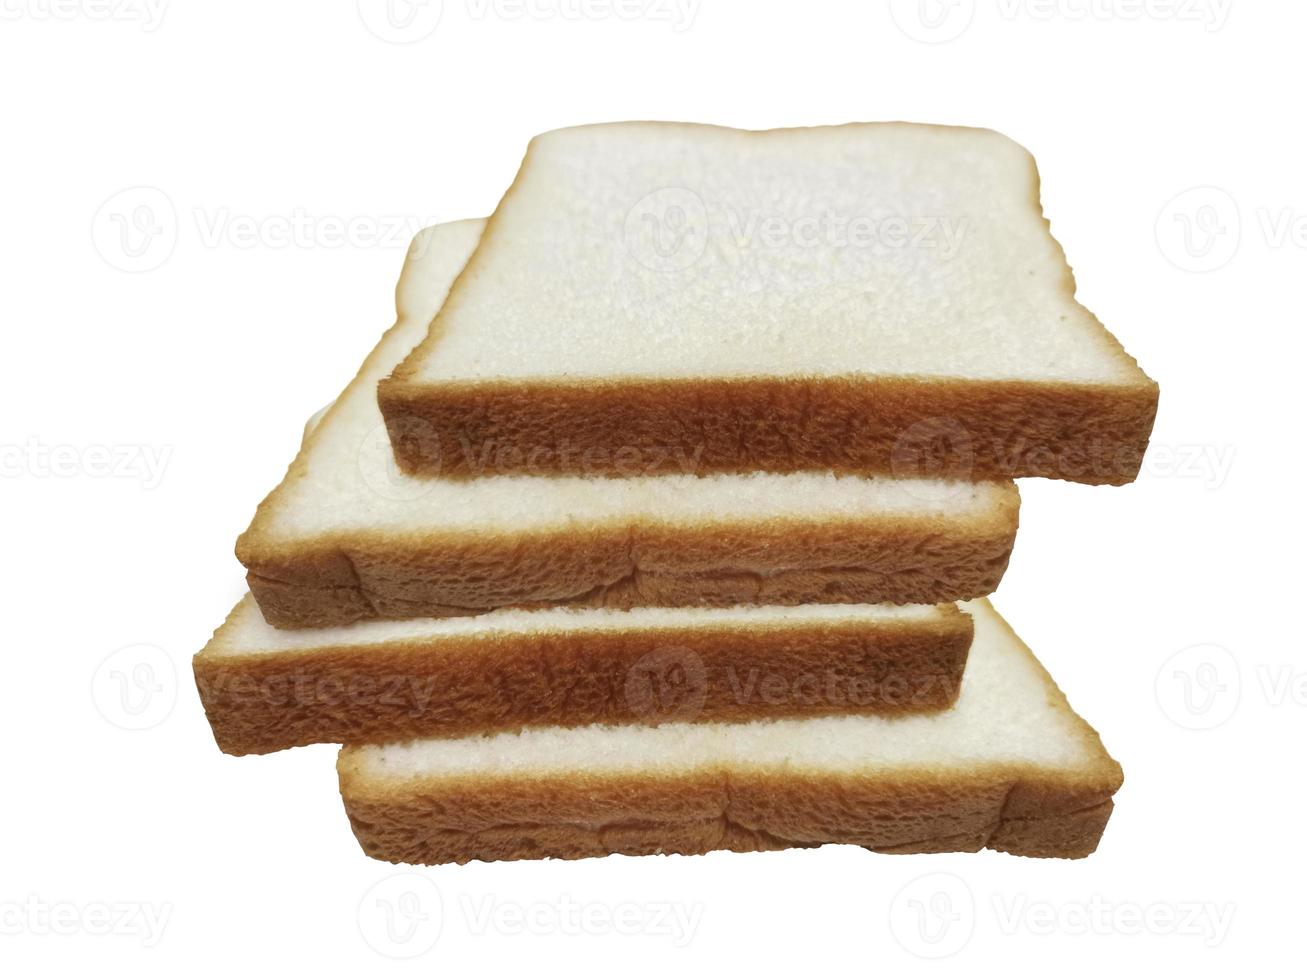 geschnittenes Brot isoliert auf weißem Hintergrund foto